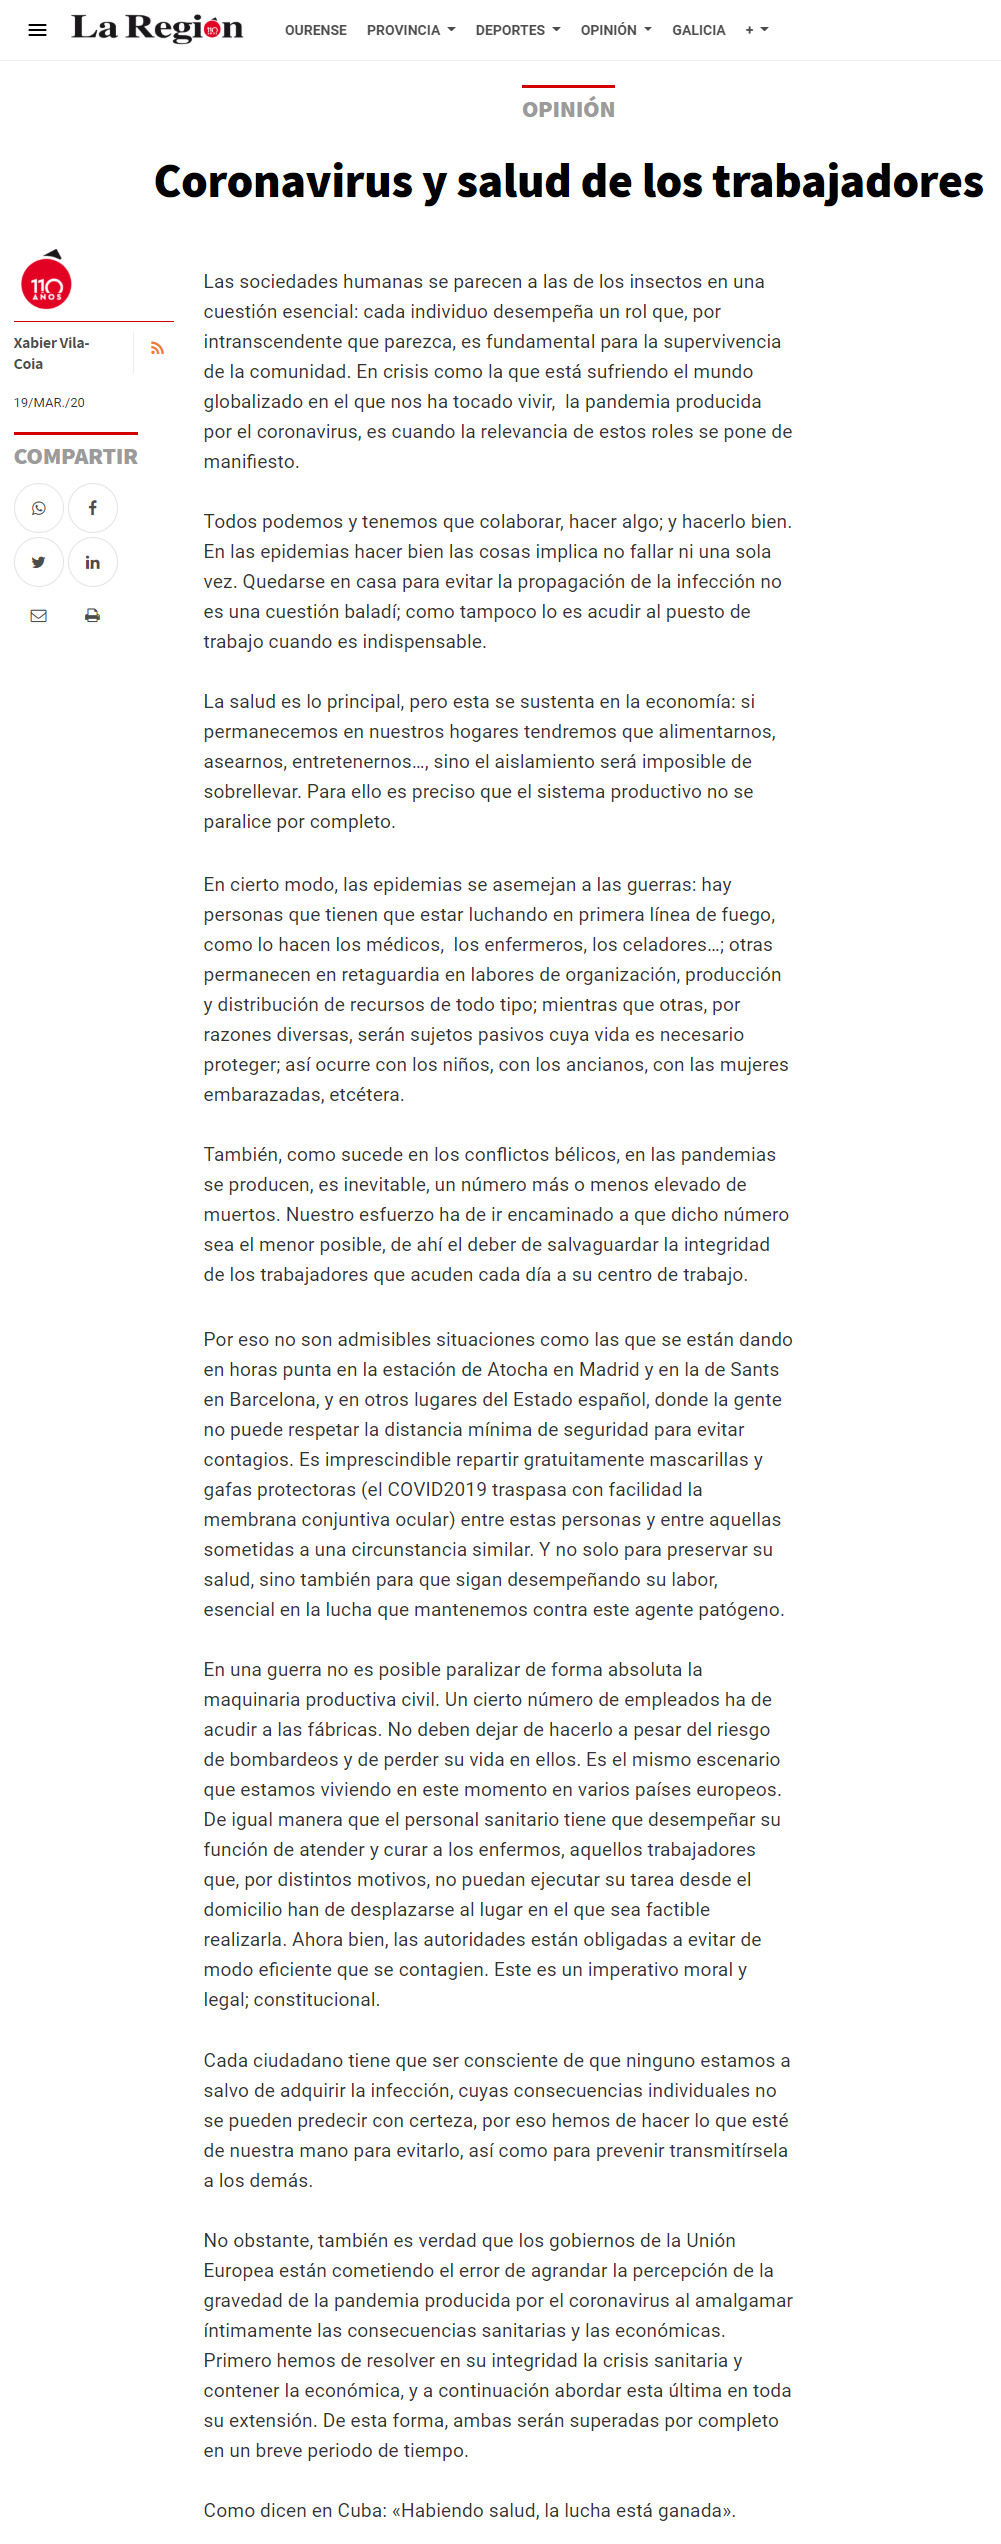 Artículo de opinión de Xabier Vila-Coia titulado "Coronavirus y salud de los trabajadores", publicado en el diario "La Región" o 19 de marzo de 2020.